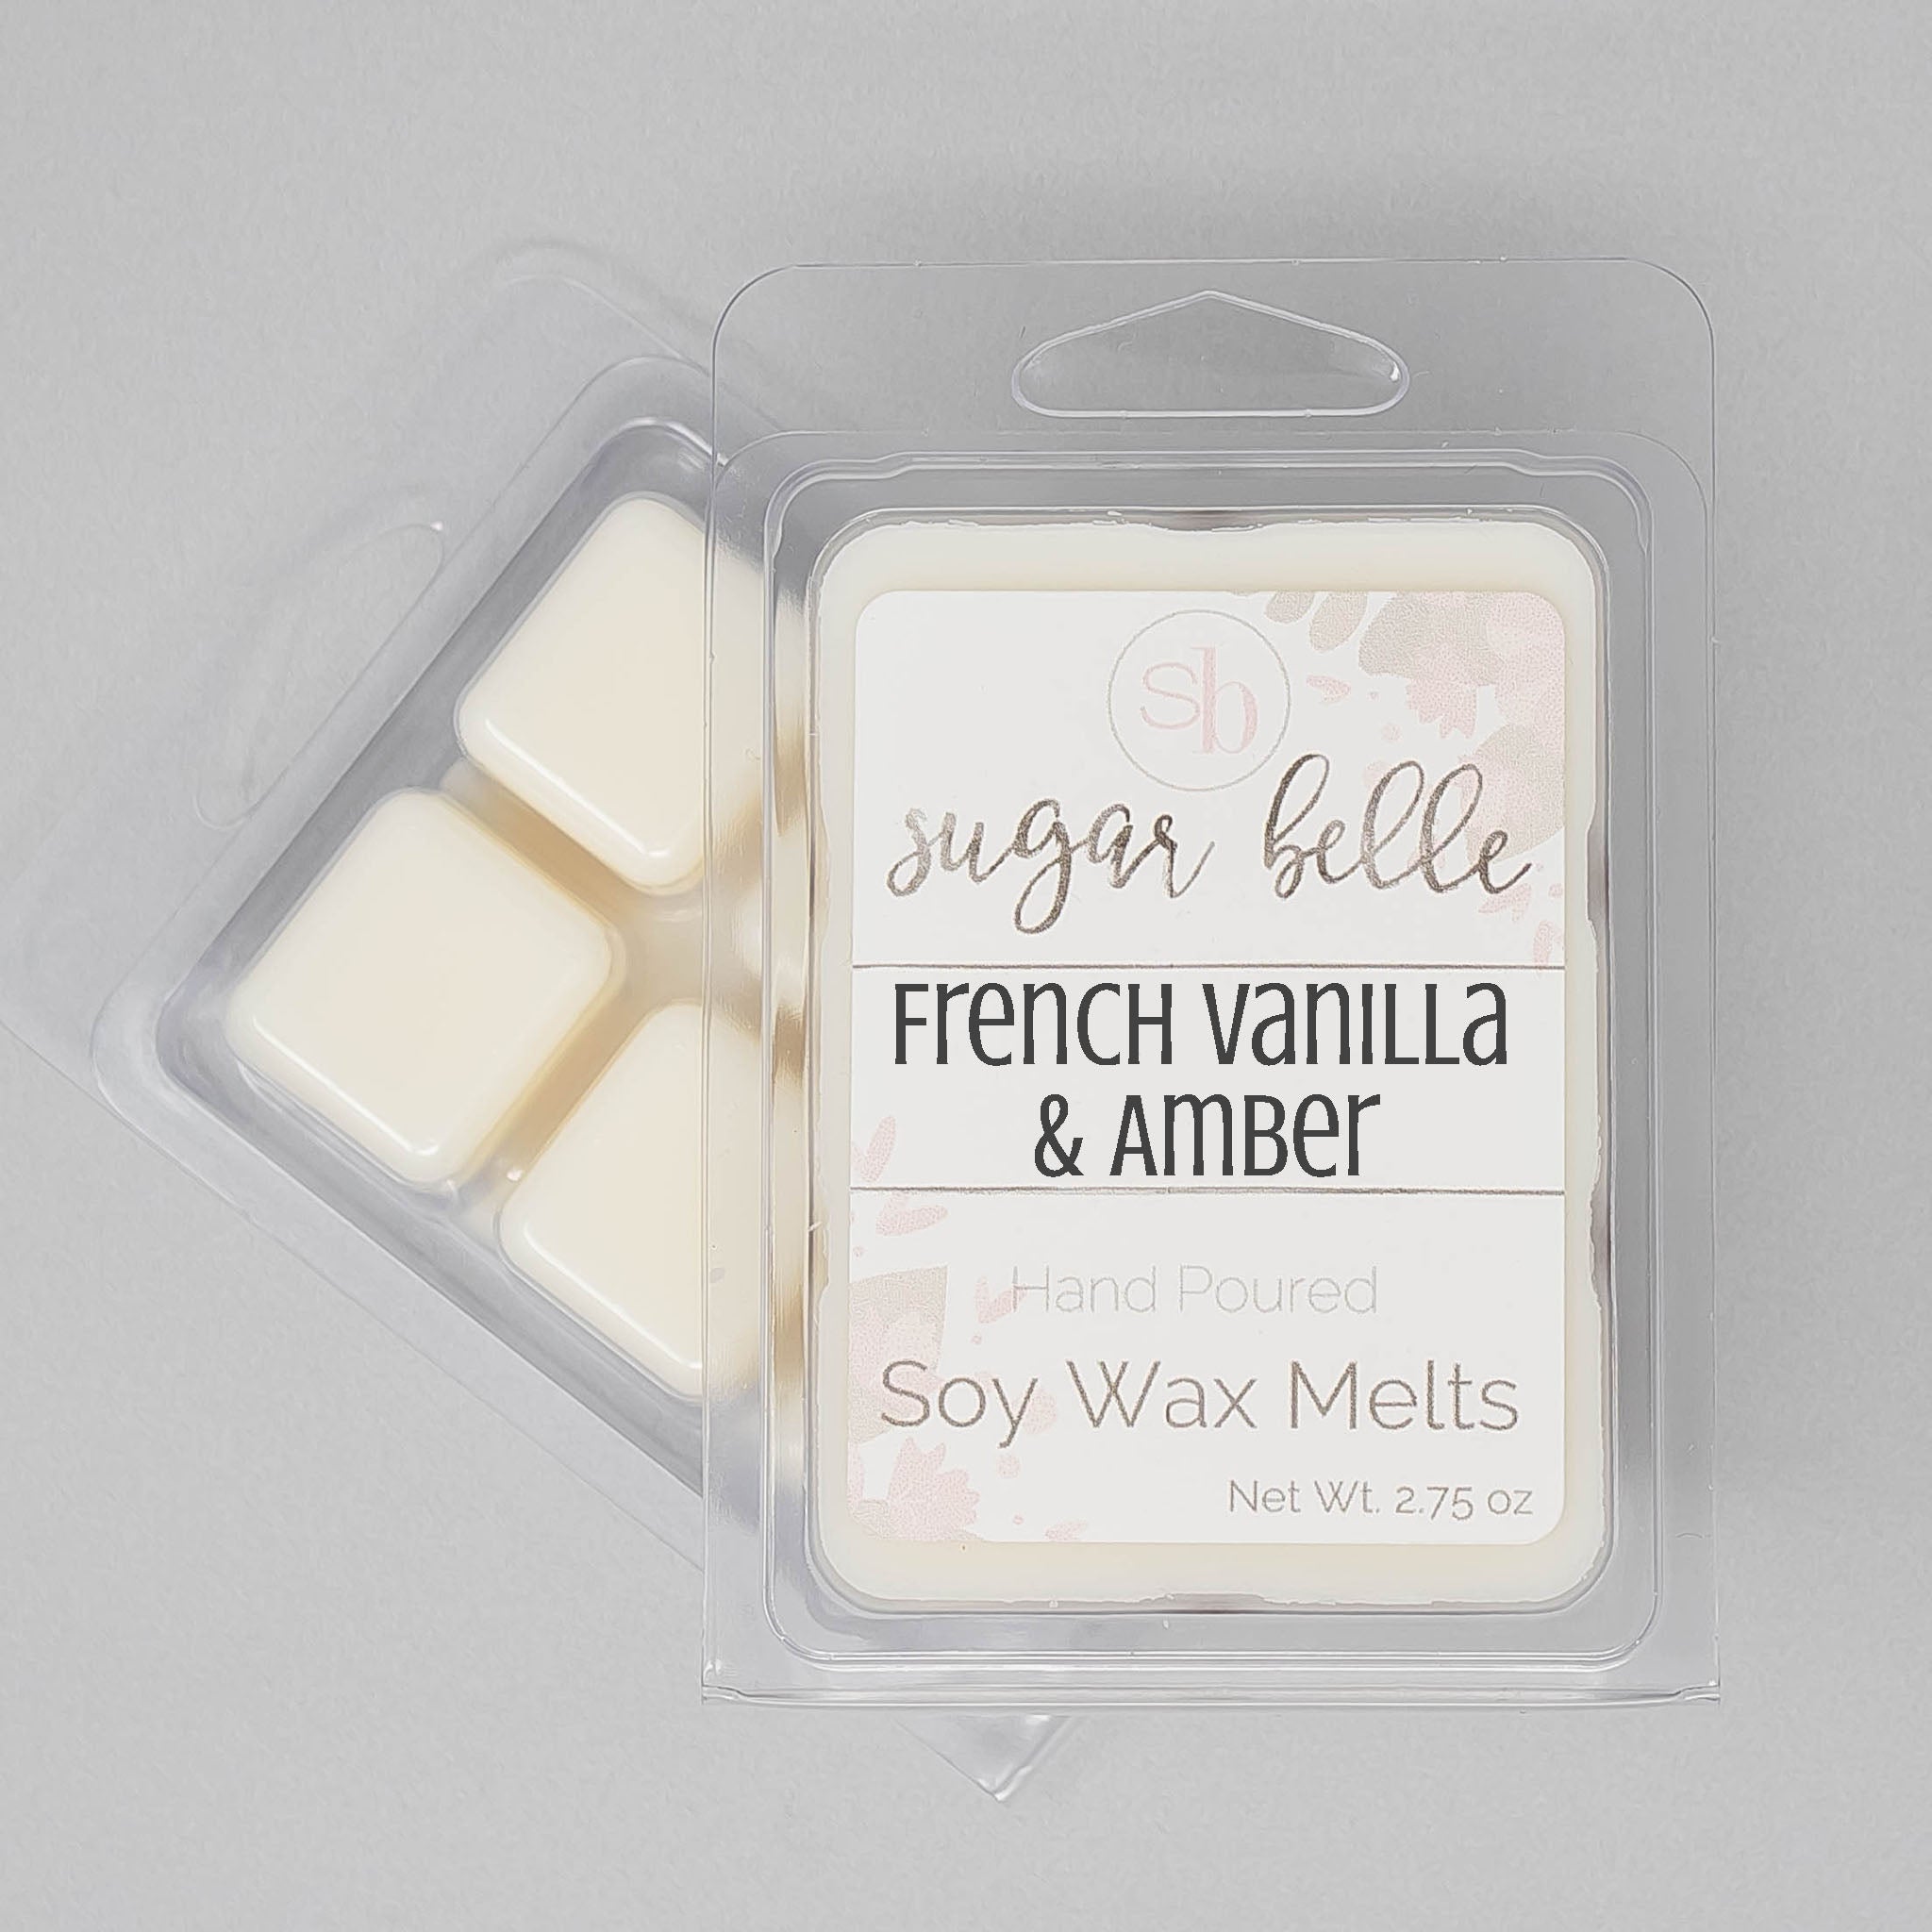 French Vanilla Wax Melts